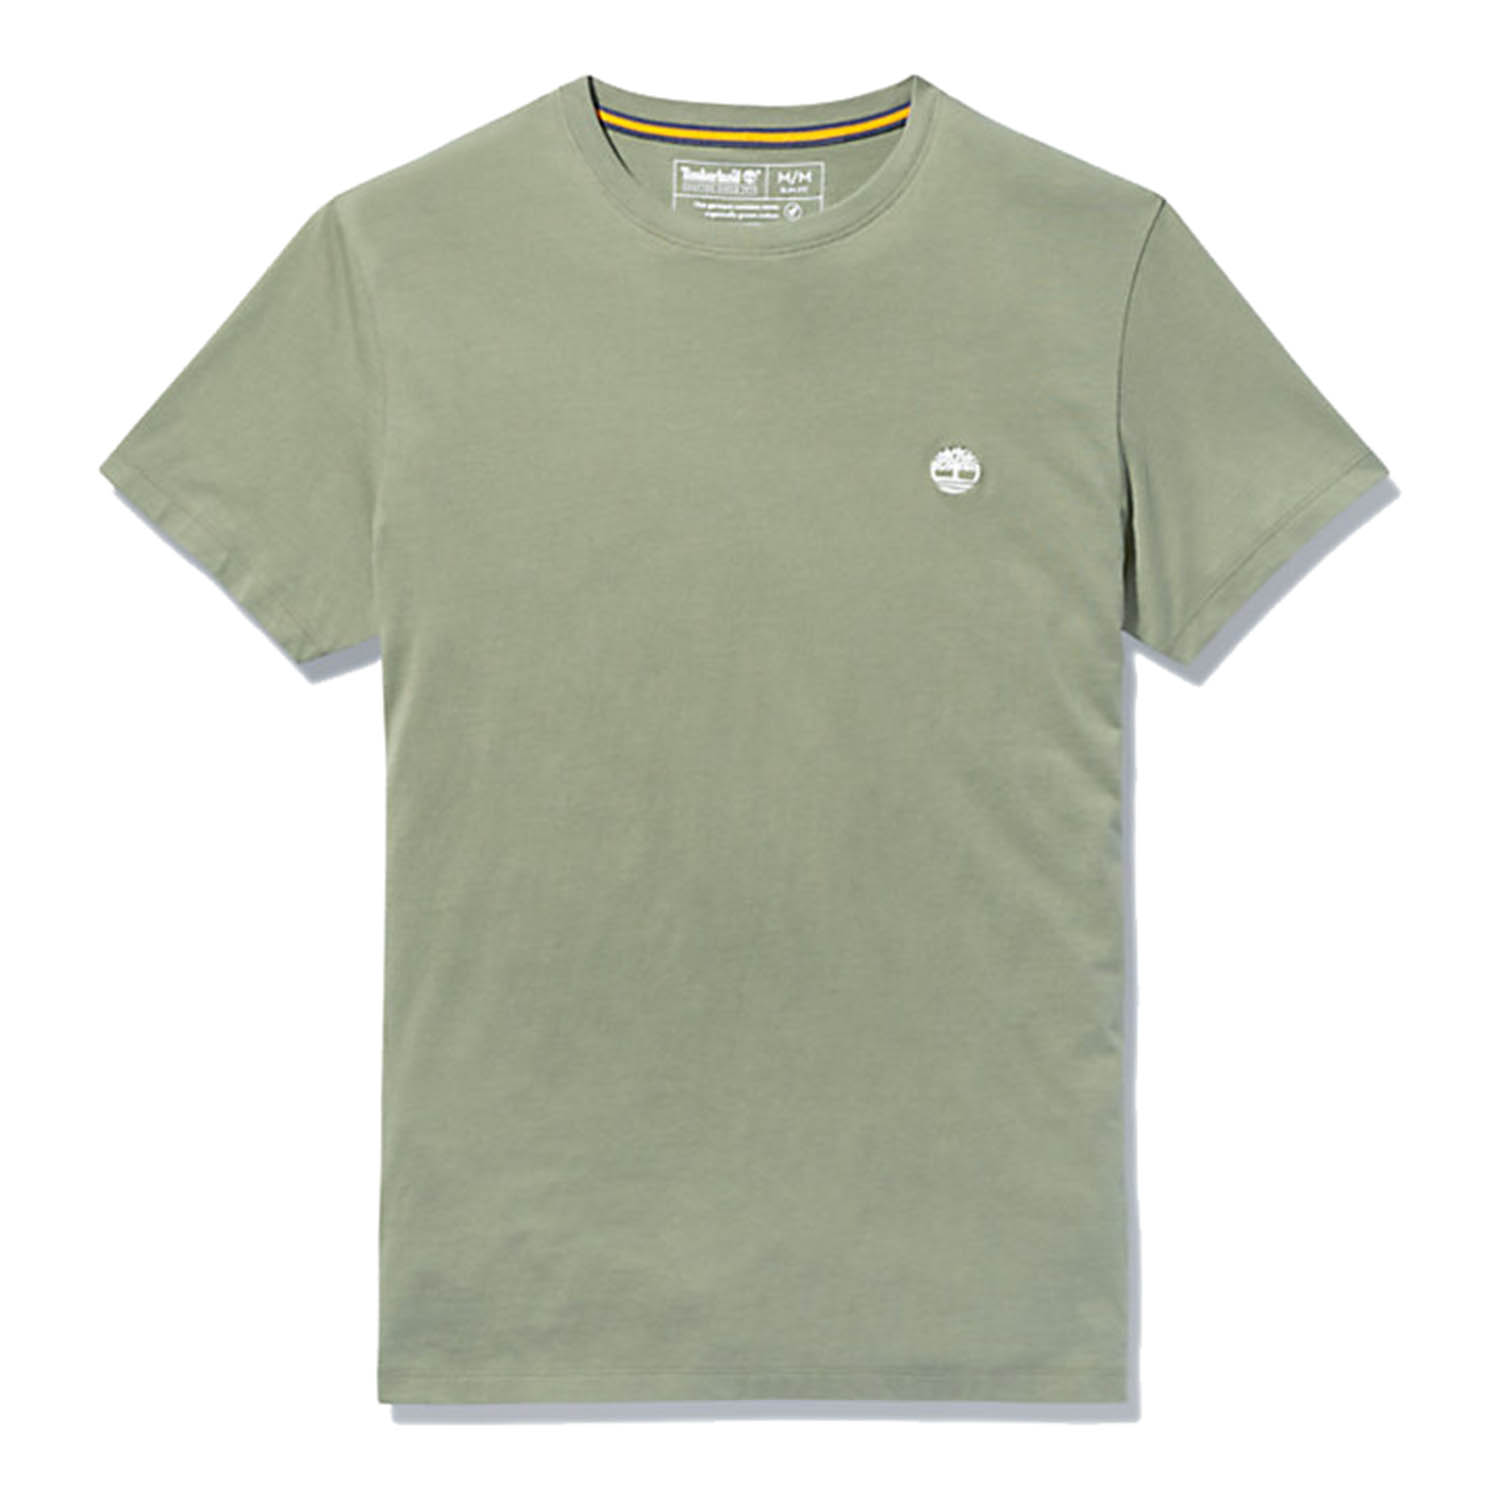 Timberland TFO SS LC LOGO T Herren T-Shirt Shirt TB0A2BR3 grün